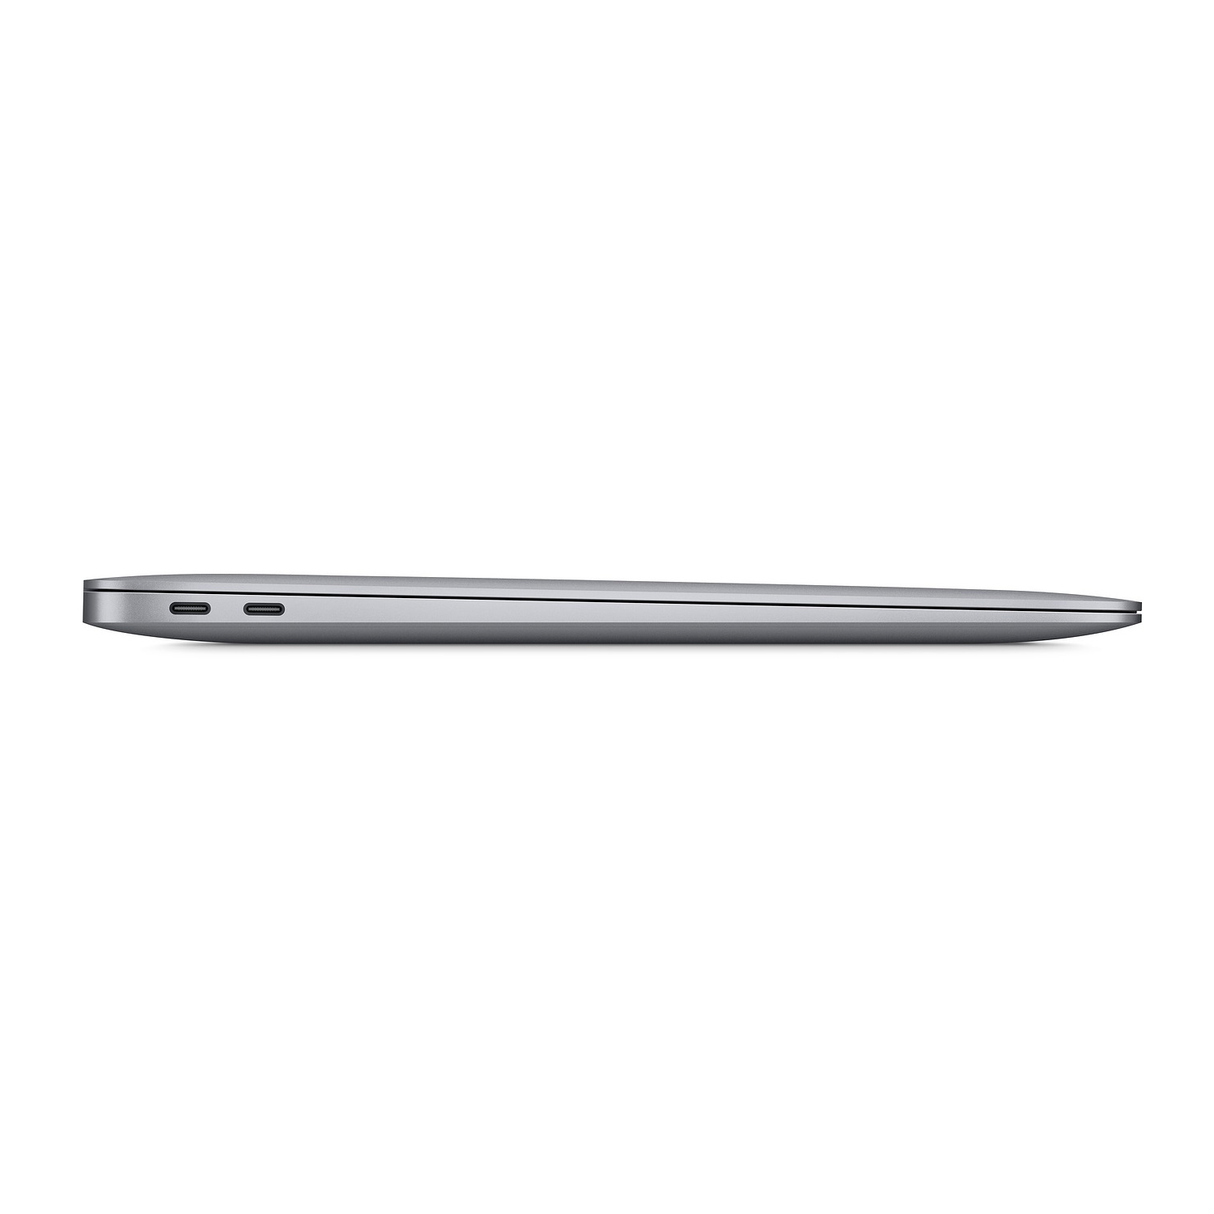 MacBook Air A1932 Intel Core I5 1.60 GHZ RAM 8GB Disco 128GB SSD 13.3″ Retina 2018 Gris Espacial Español